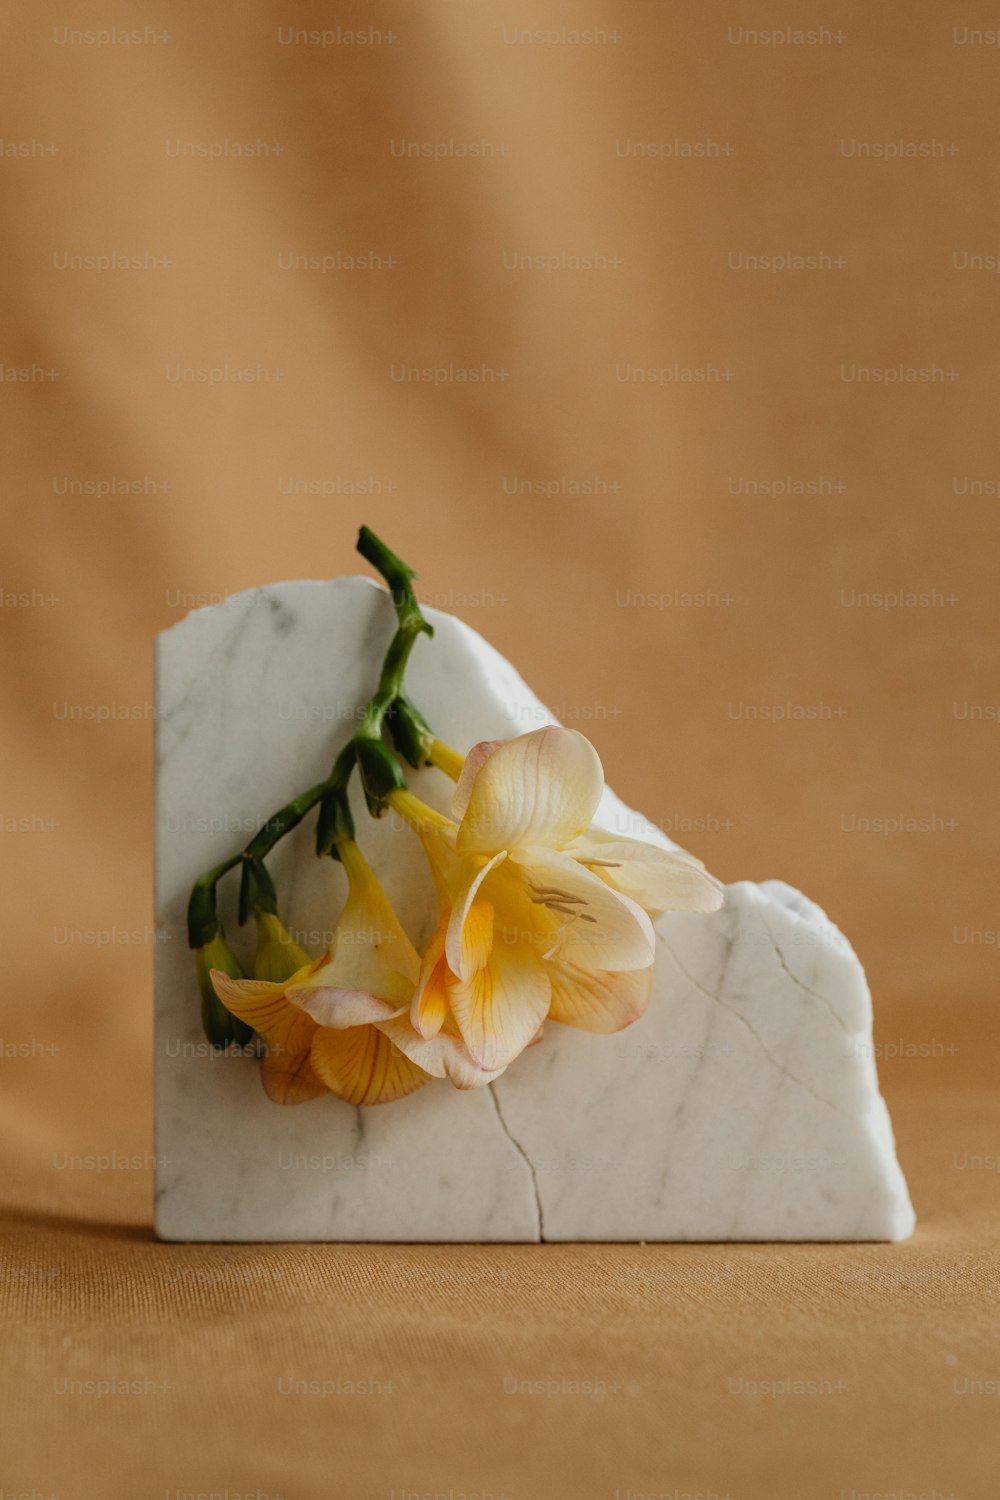 um bloco de mármore branco com uma flor amarela sobre ele